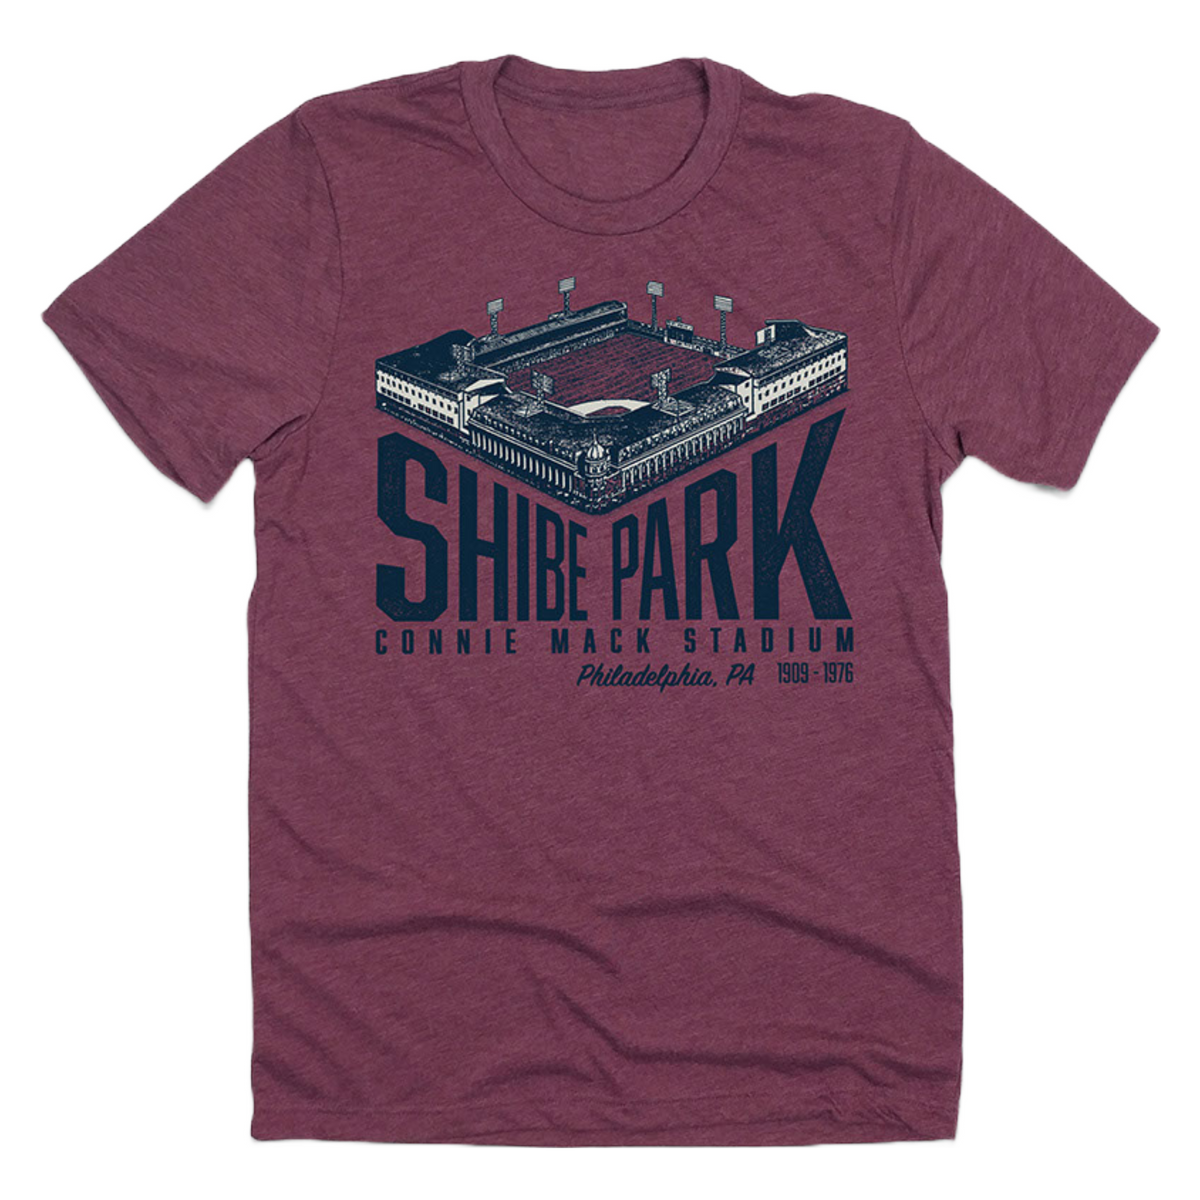 Shibe Park - Connie Mack Stadium